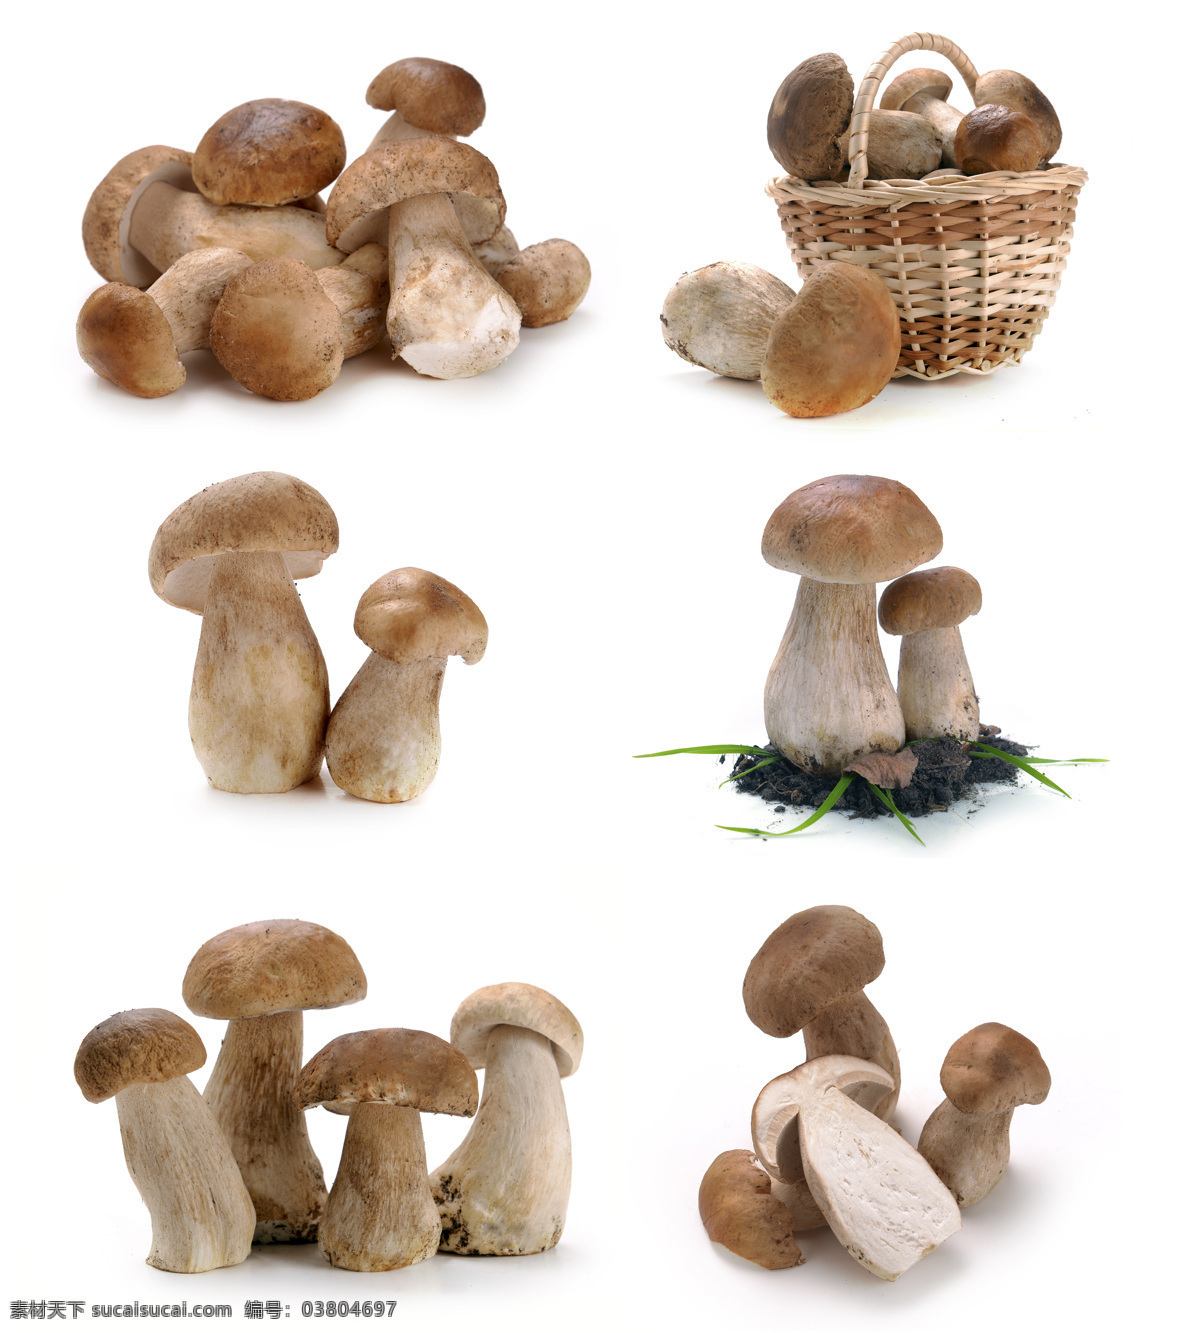 新鲜蘑菇摄影 新鲜 蘑菇 食物 蔬菜 餐厅美食 篮子里的蘑菇 香菇 食材原料 水果蔬菜 餐饮美食 白色